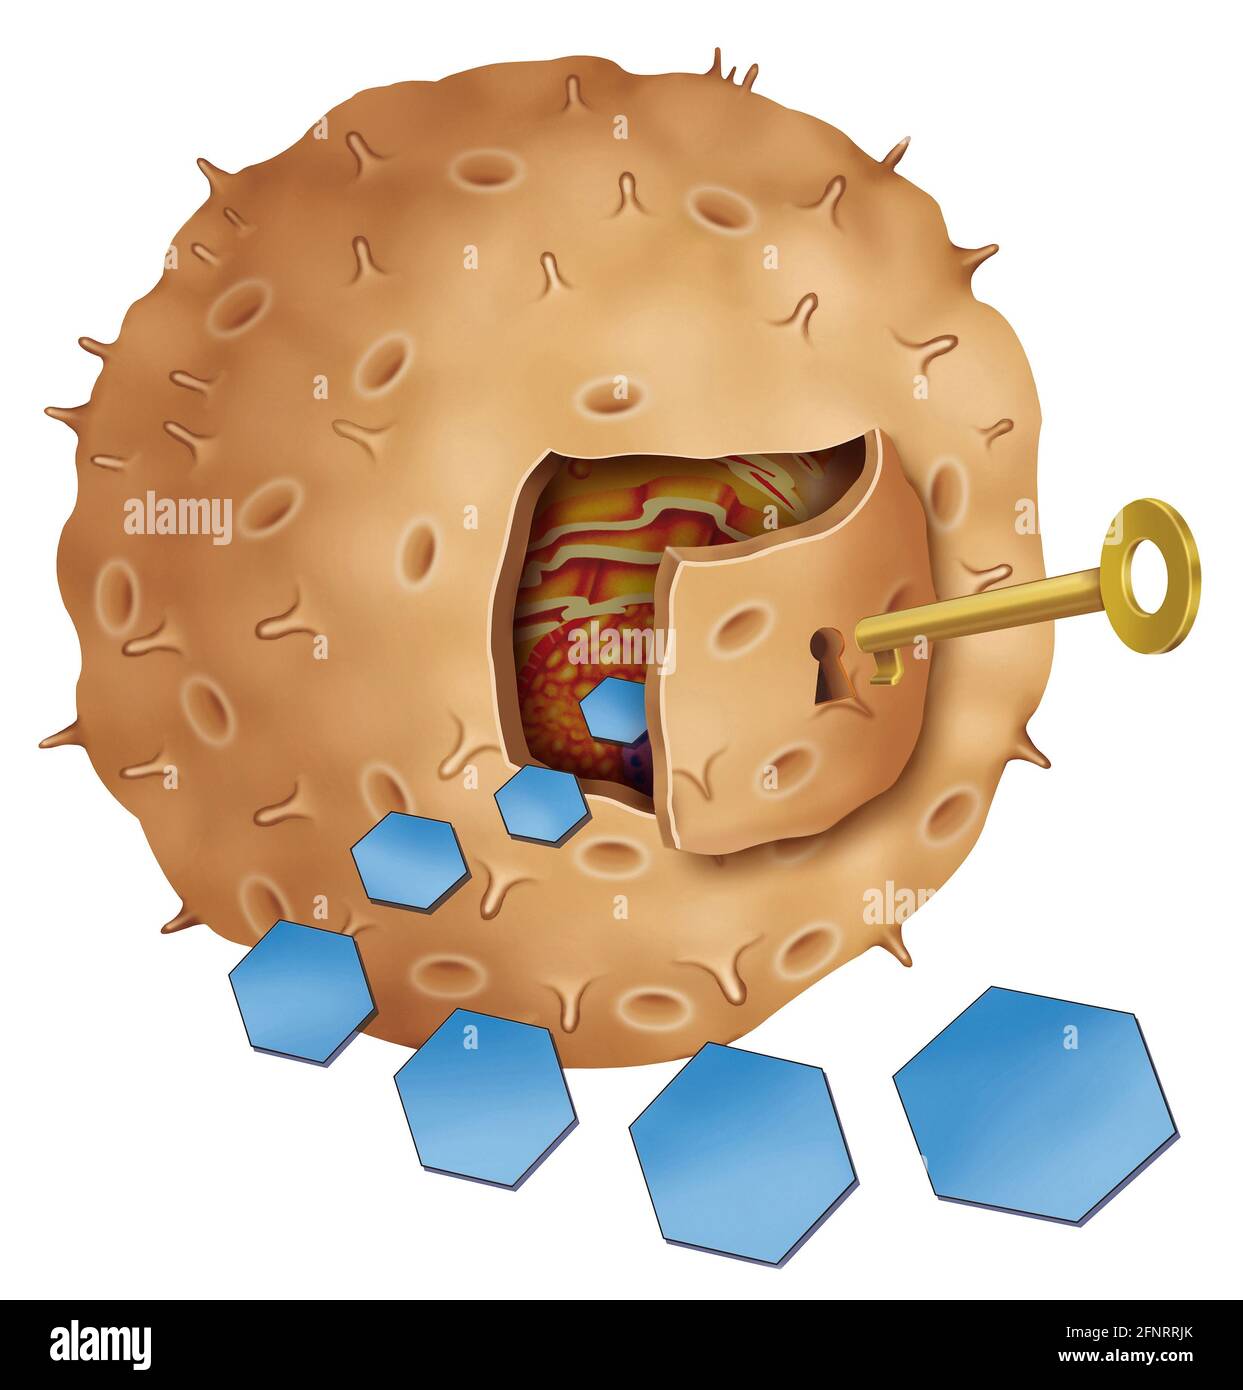 Il recettore dell'insulina è attivato dall'insulina ormonale. Questo permette al glucosio di entrare nelle cellule del corpo per fornirci energia. Foto Stock